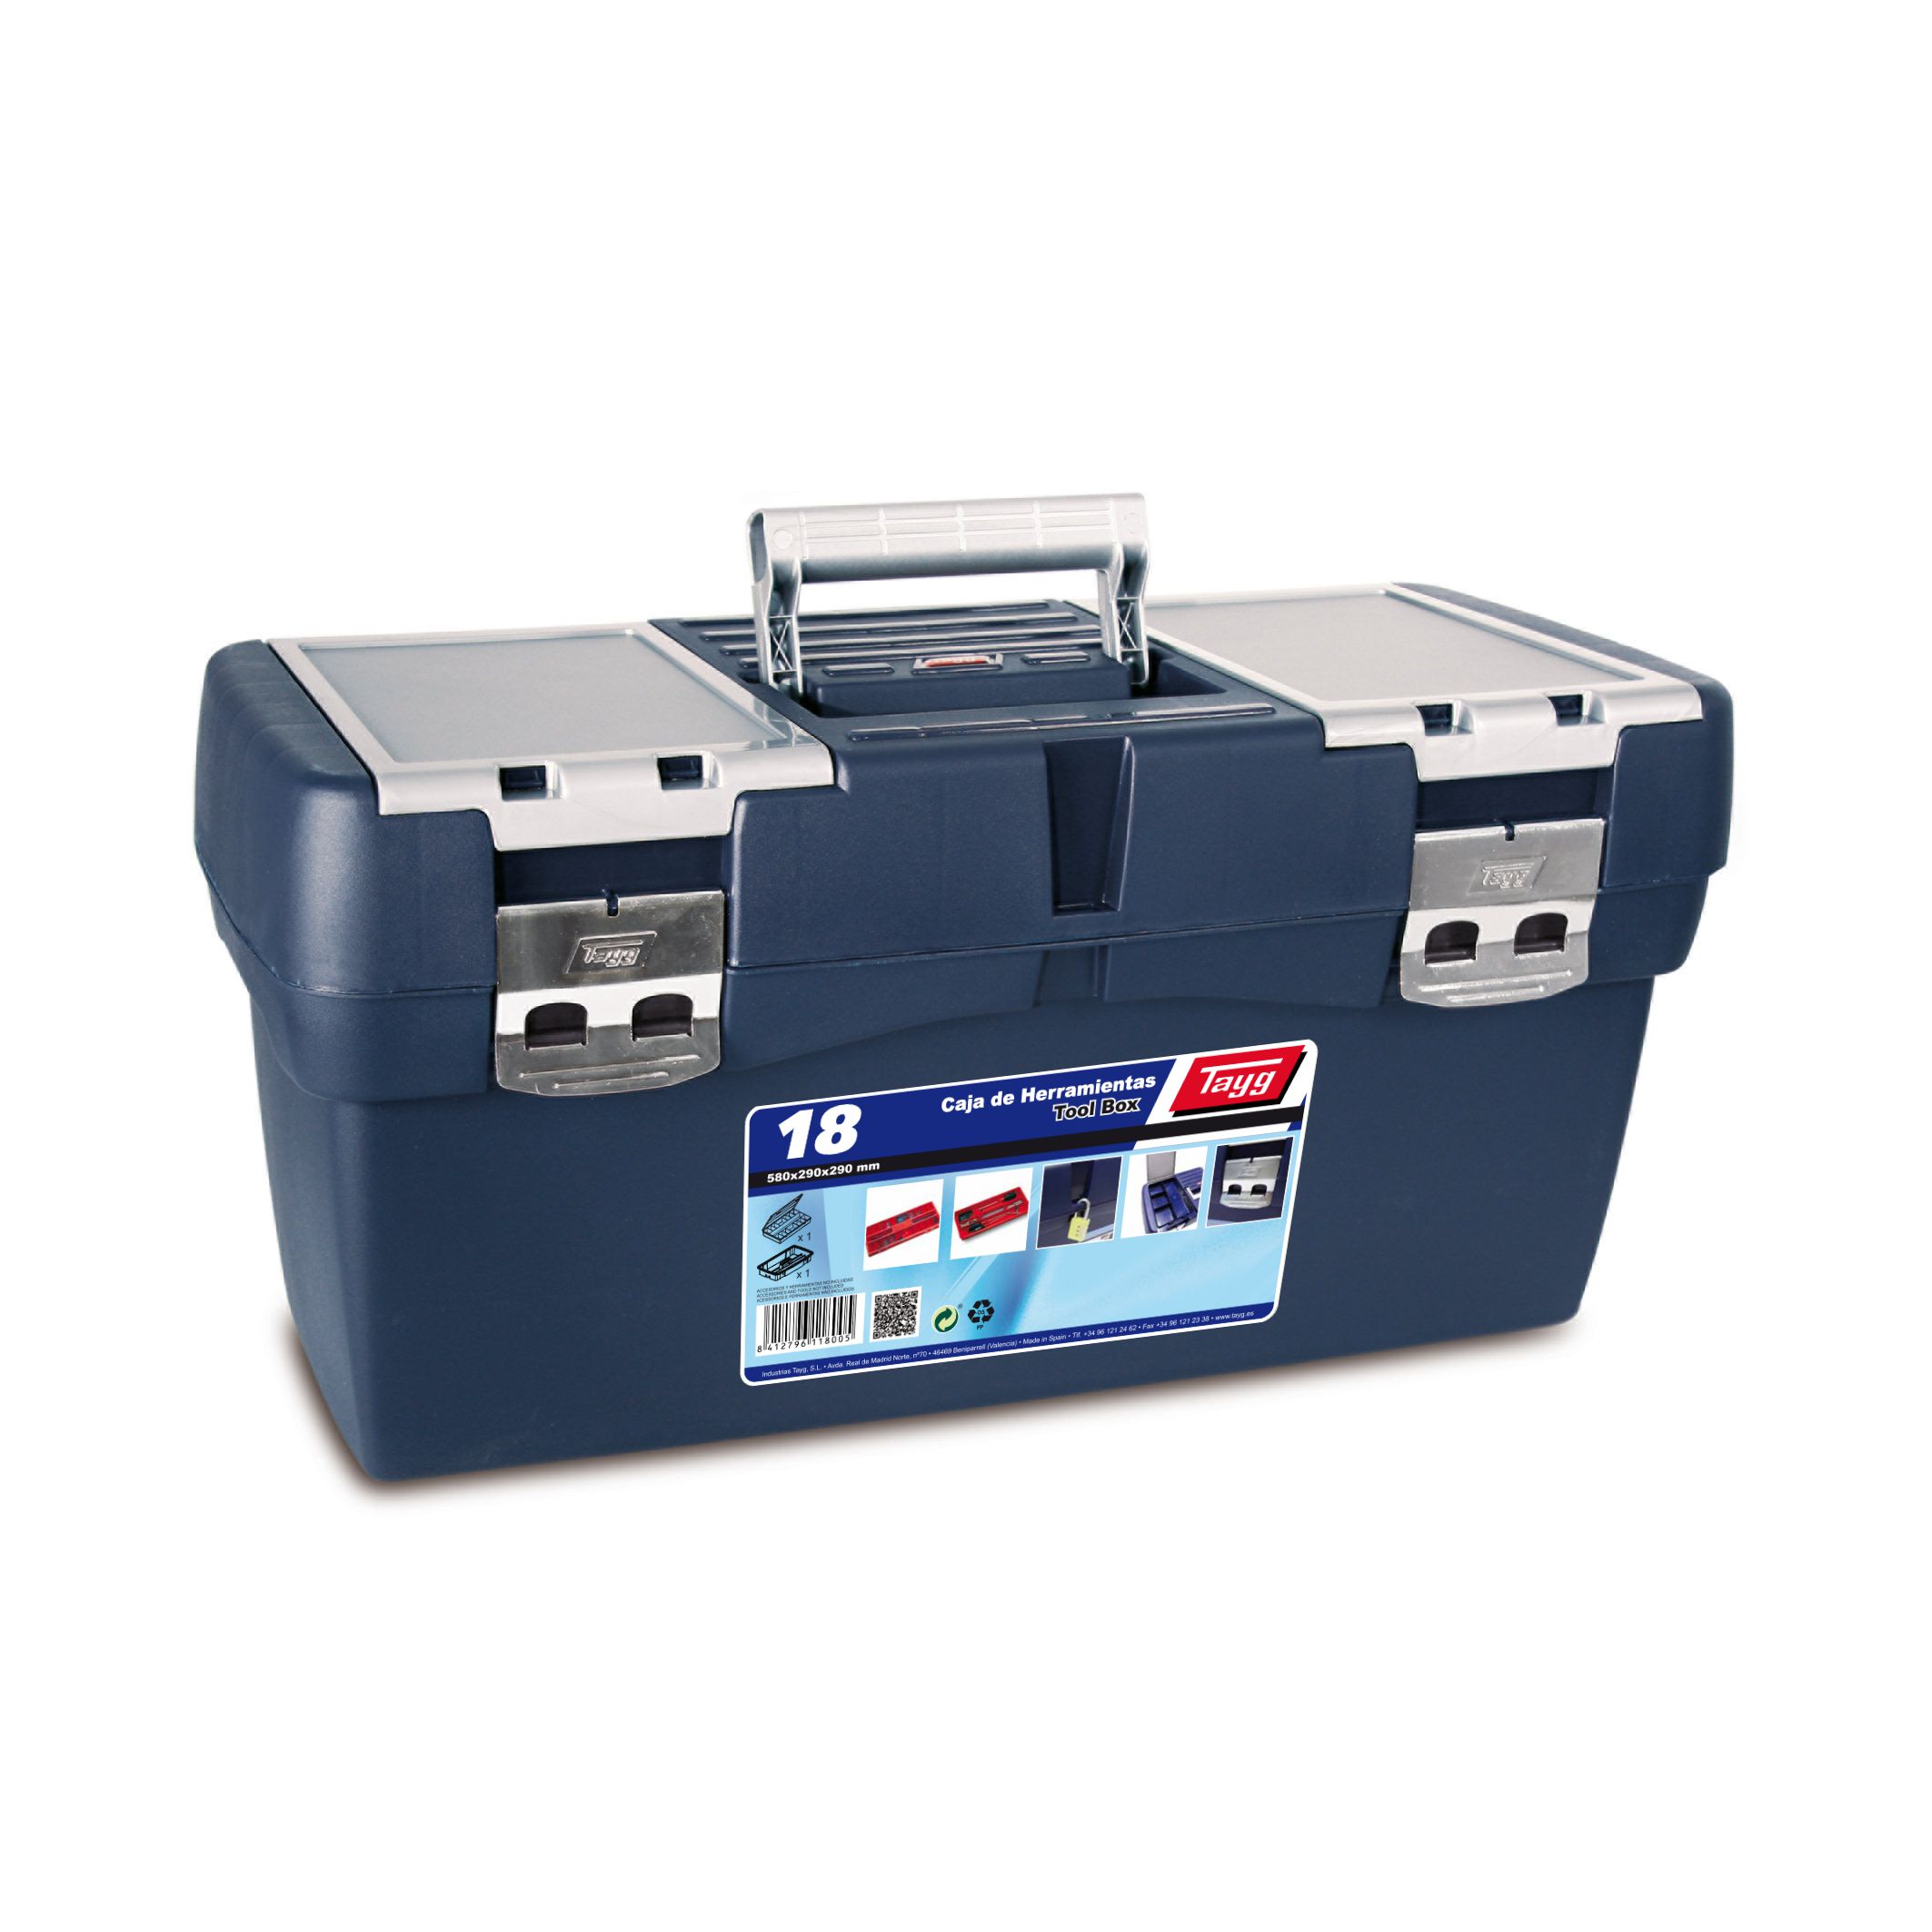 Ящик пластиковий для інструментів Tayg Box 16 Caja htas, 50х25,8х25,5 см, синій (116001) - фото 1